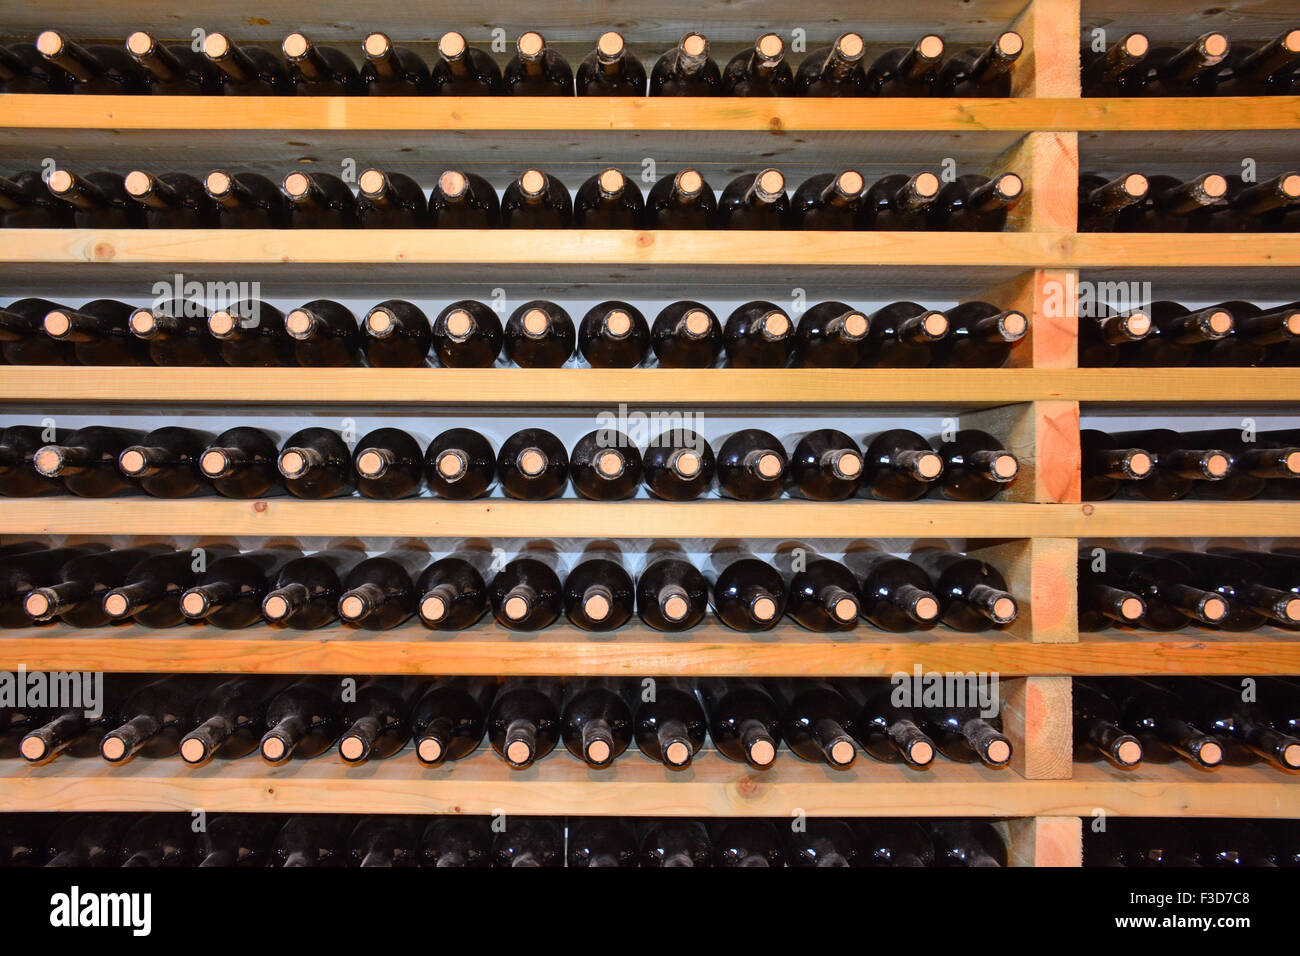 Les bouteilles de vin dans la cave Banque D'Images